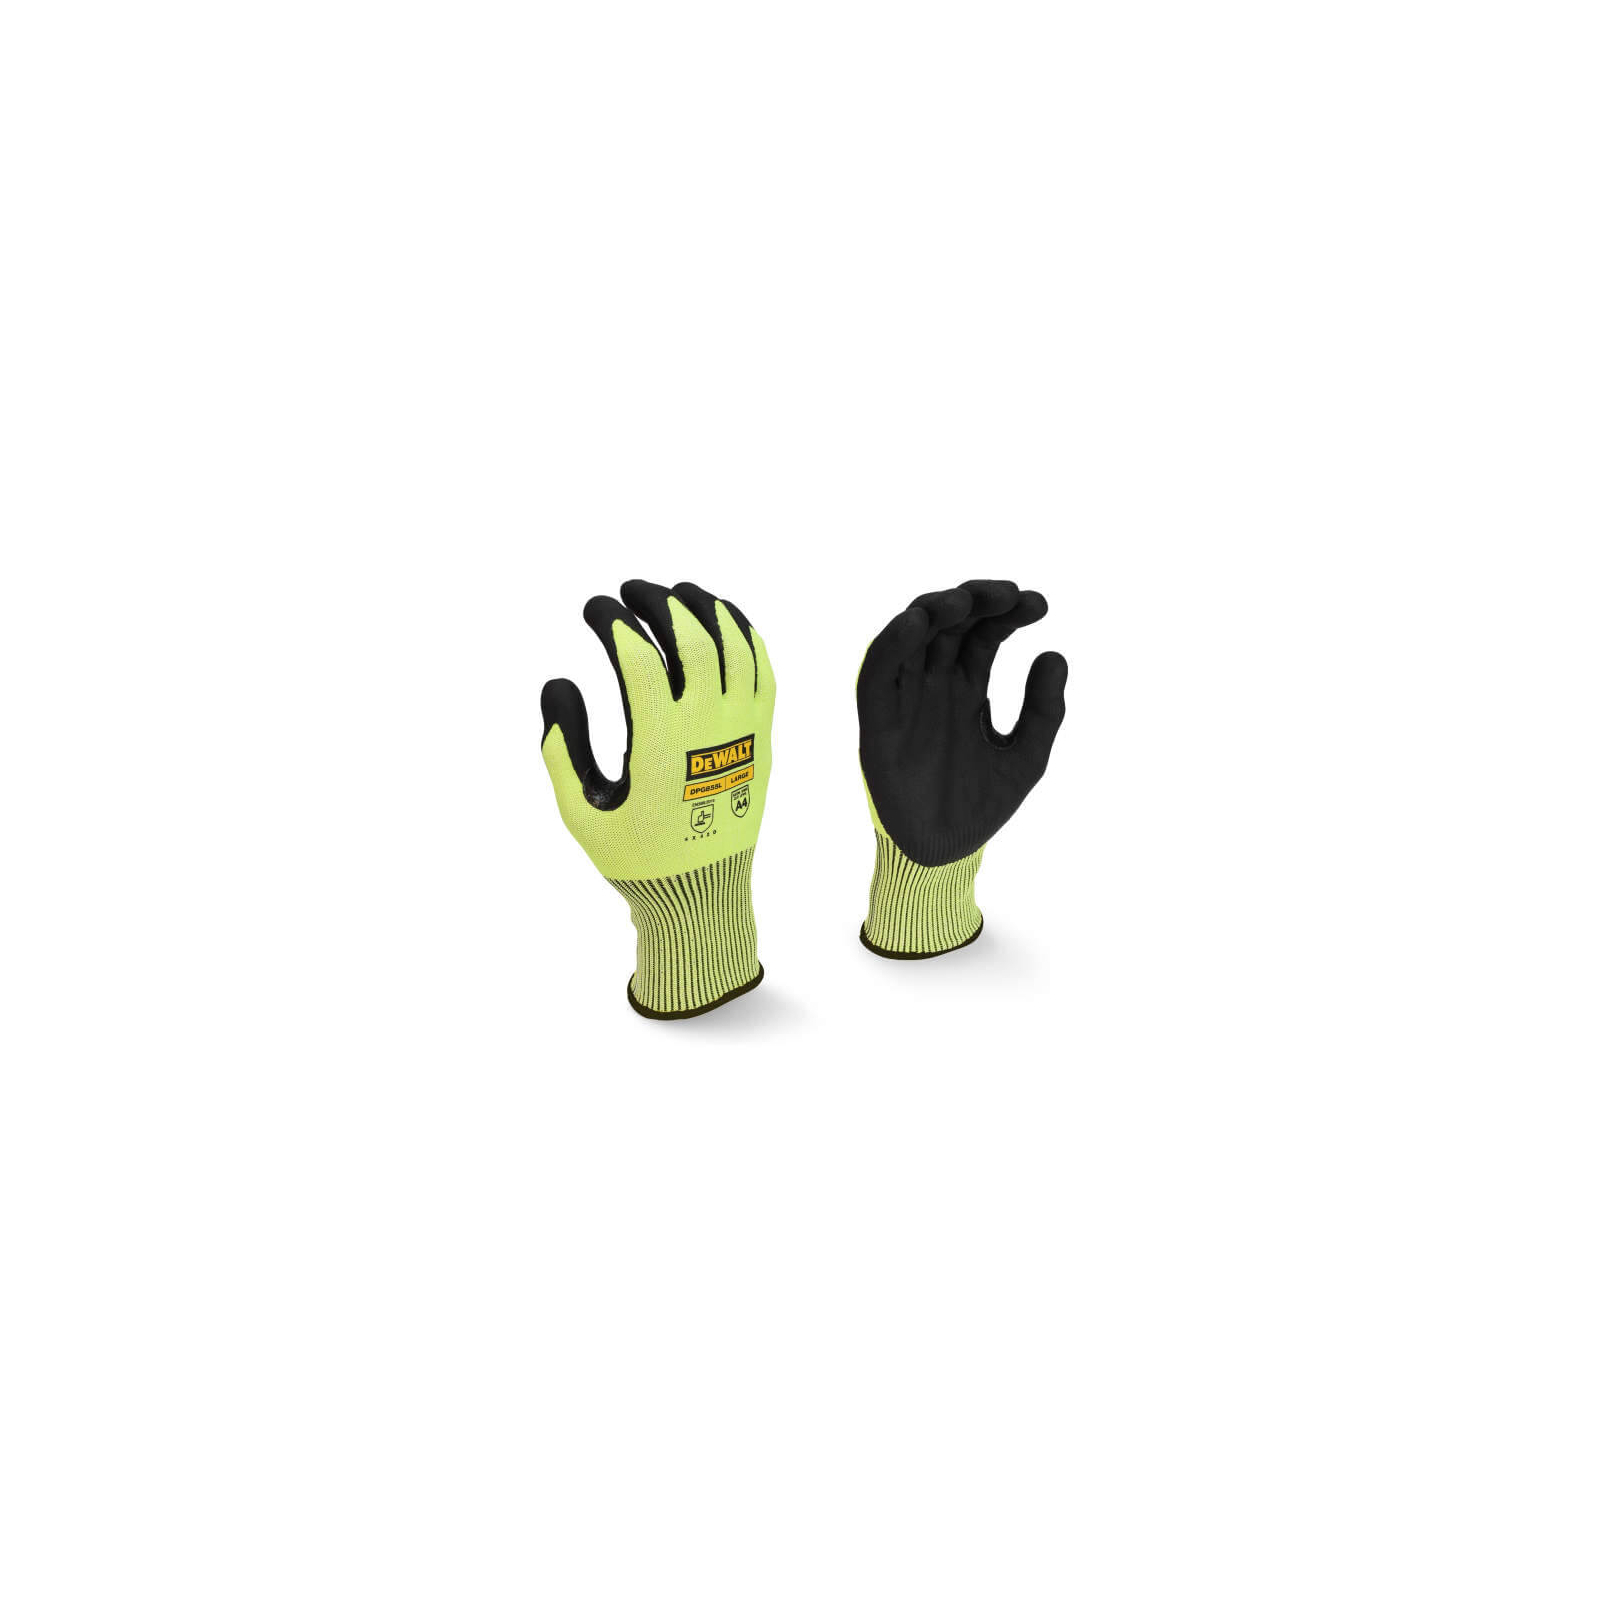 Защитные перчатки DeWALT с высокой стойкостью к порезам (DPG855L)